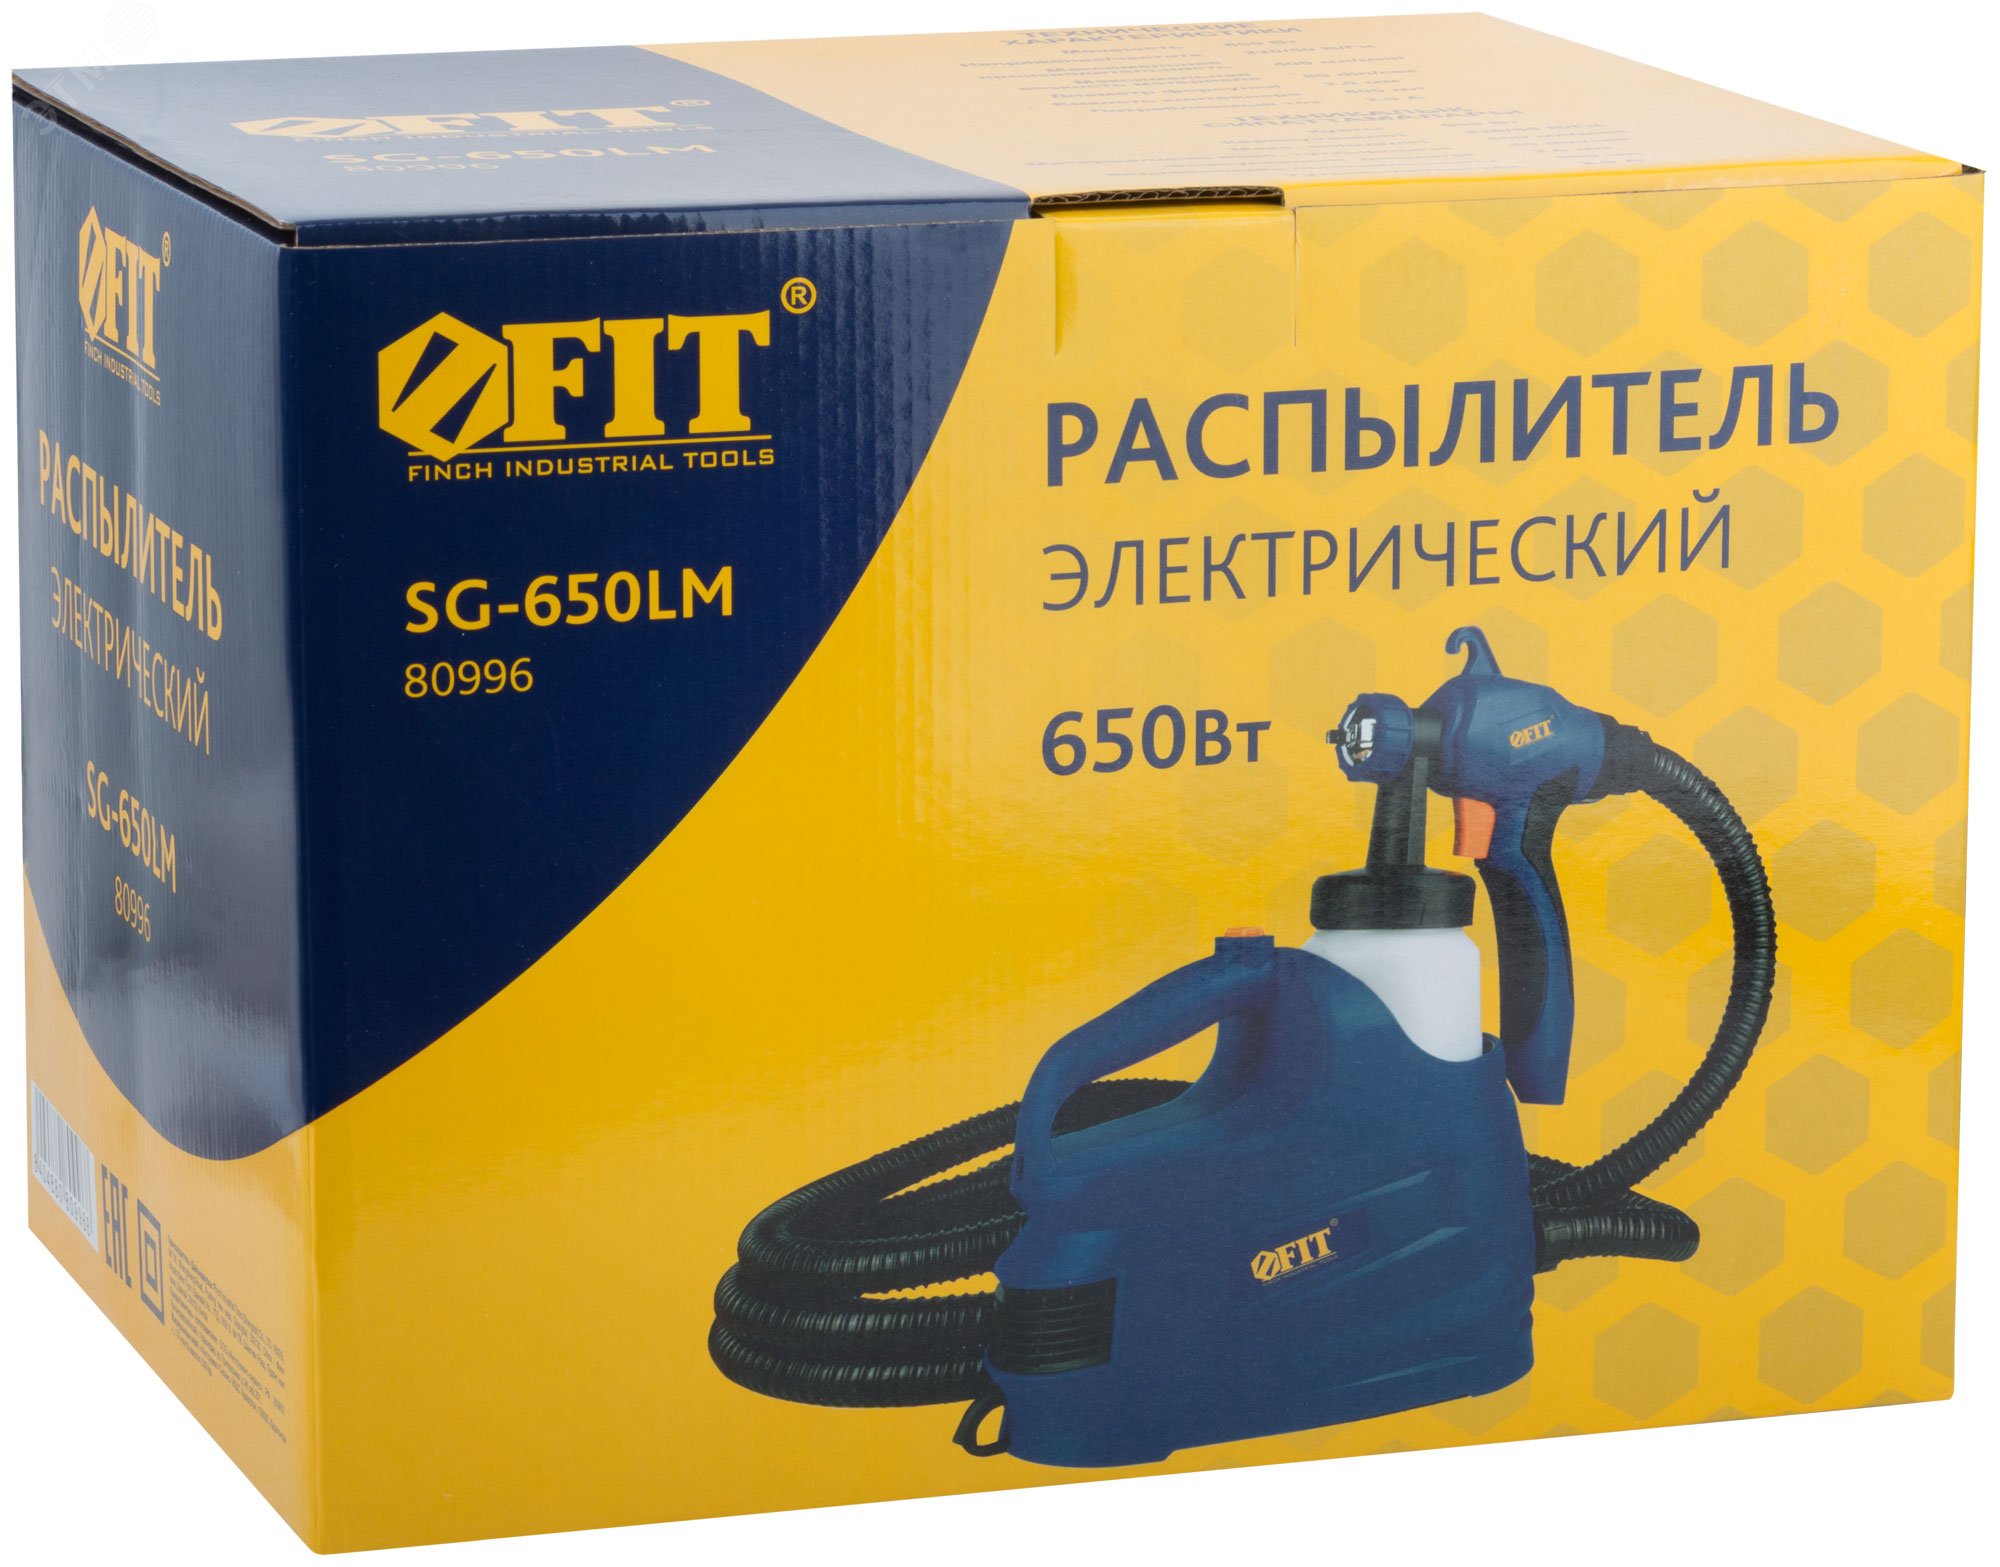 Распылитель электрический 650 Вт, 2.0 мм, 800 мл, 80 DIN/сек, 400 мл/мин, HVLP, коробка 80996 FIT - превью 3